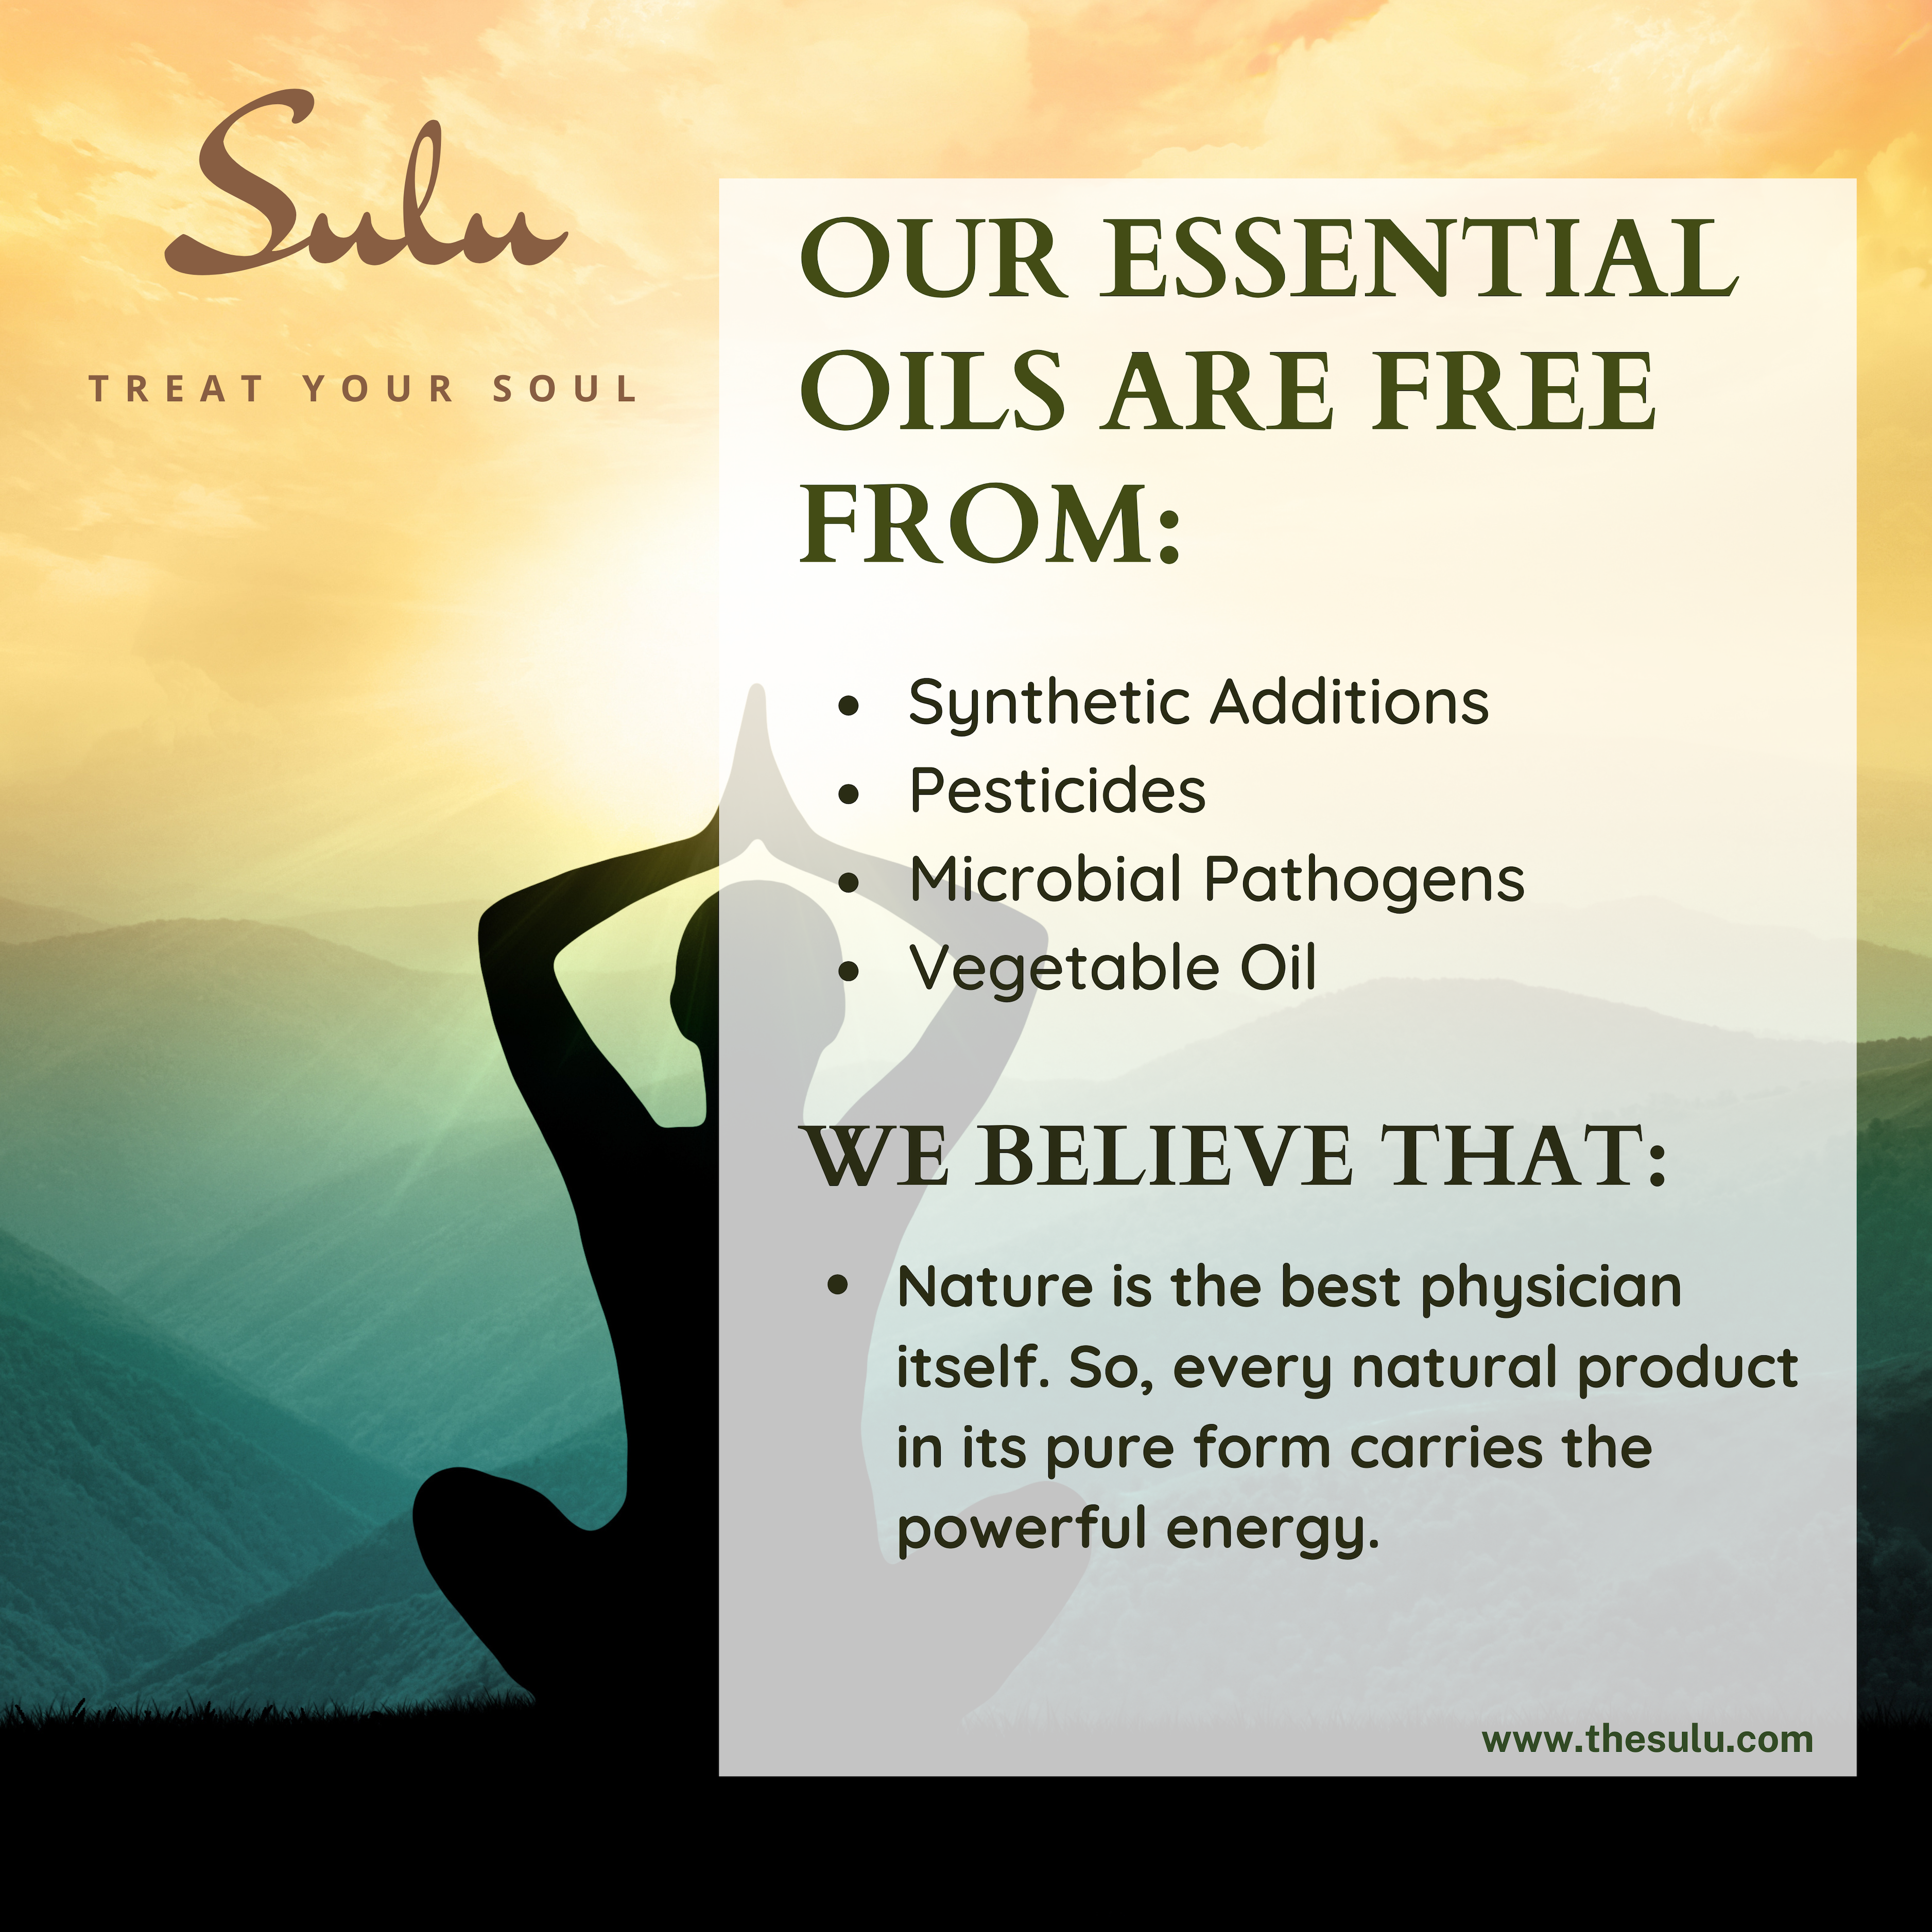 SVA Nutmeg Essential Oil 4 Oz Premium Therapeutic Grade 100% Pure